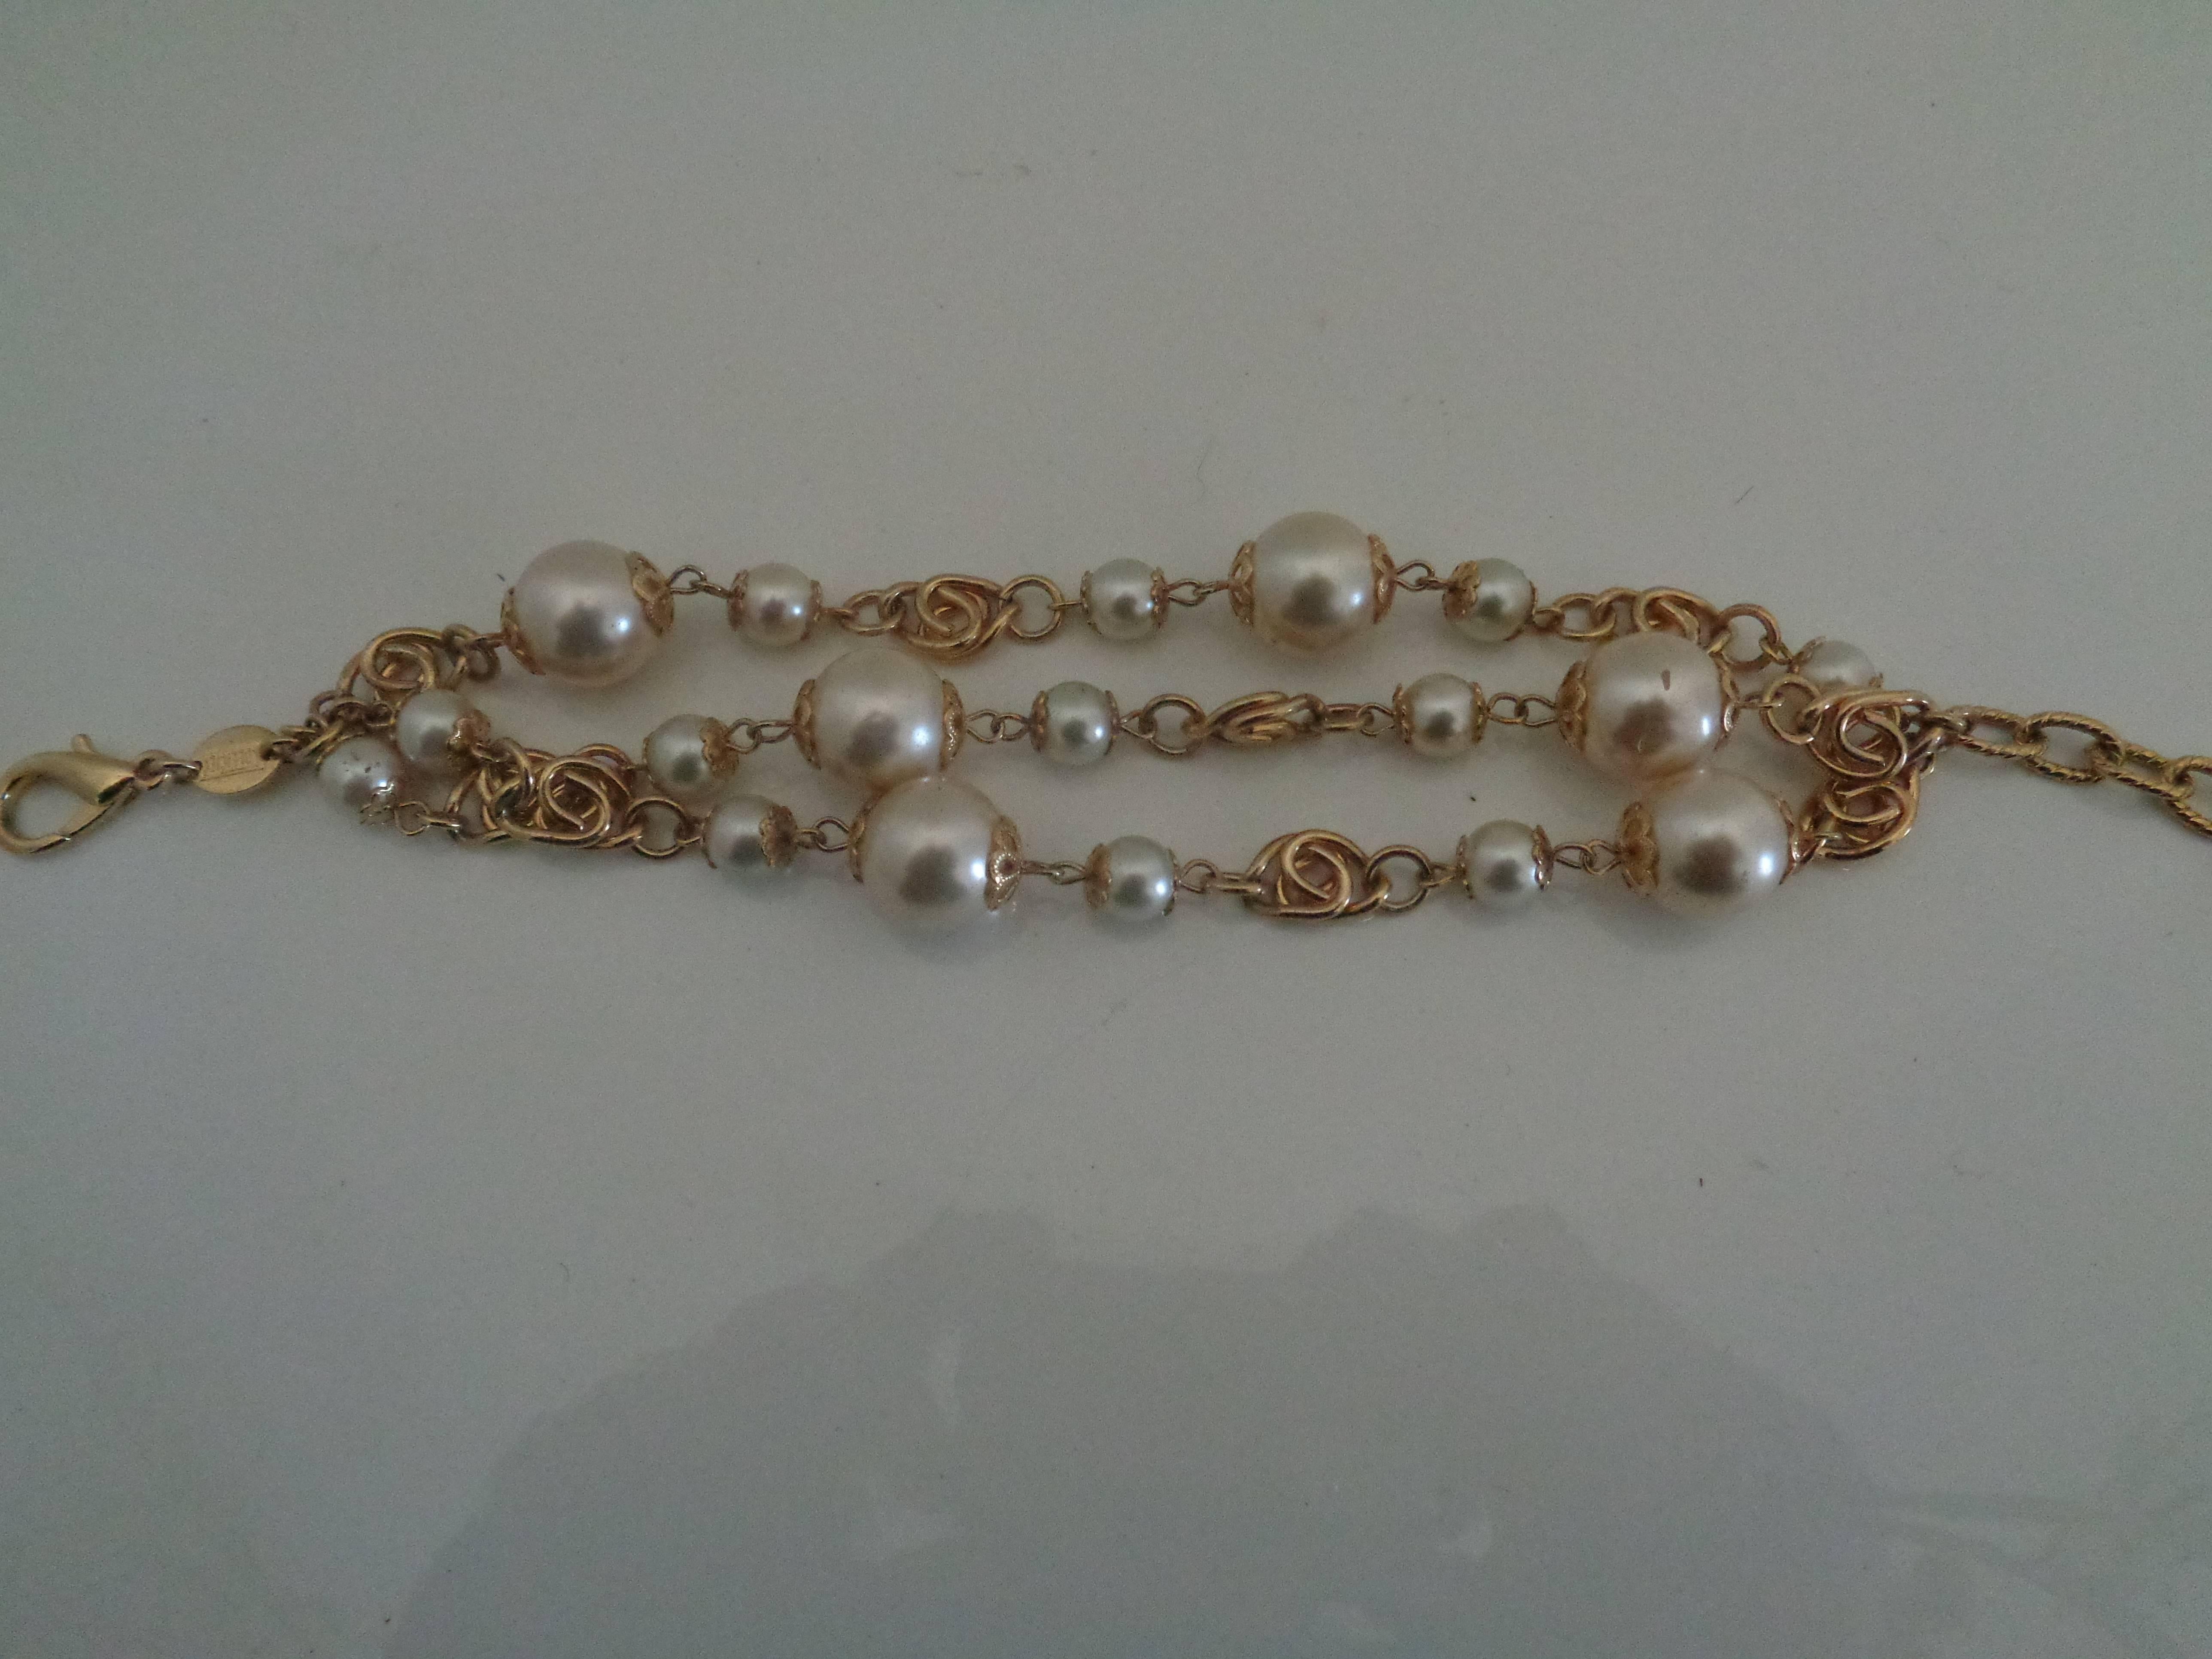 Officiel Gold tone Faux Pearls Bracelet

Total lenght 22 cm